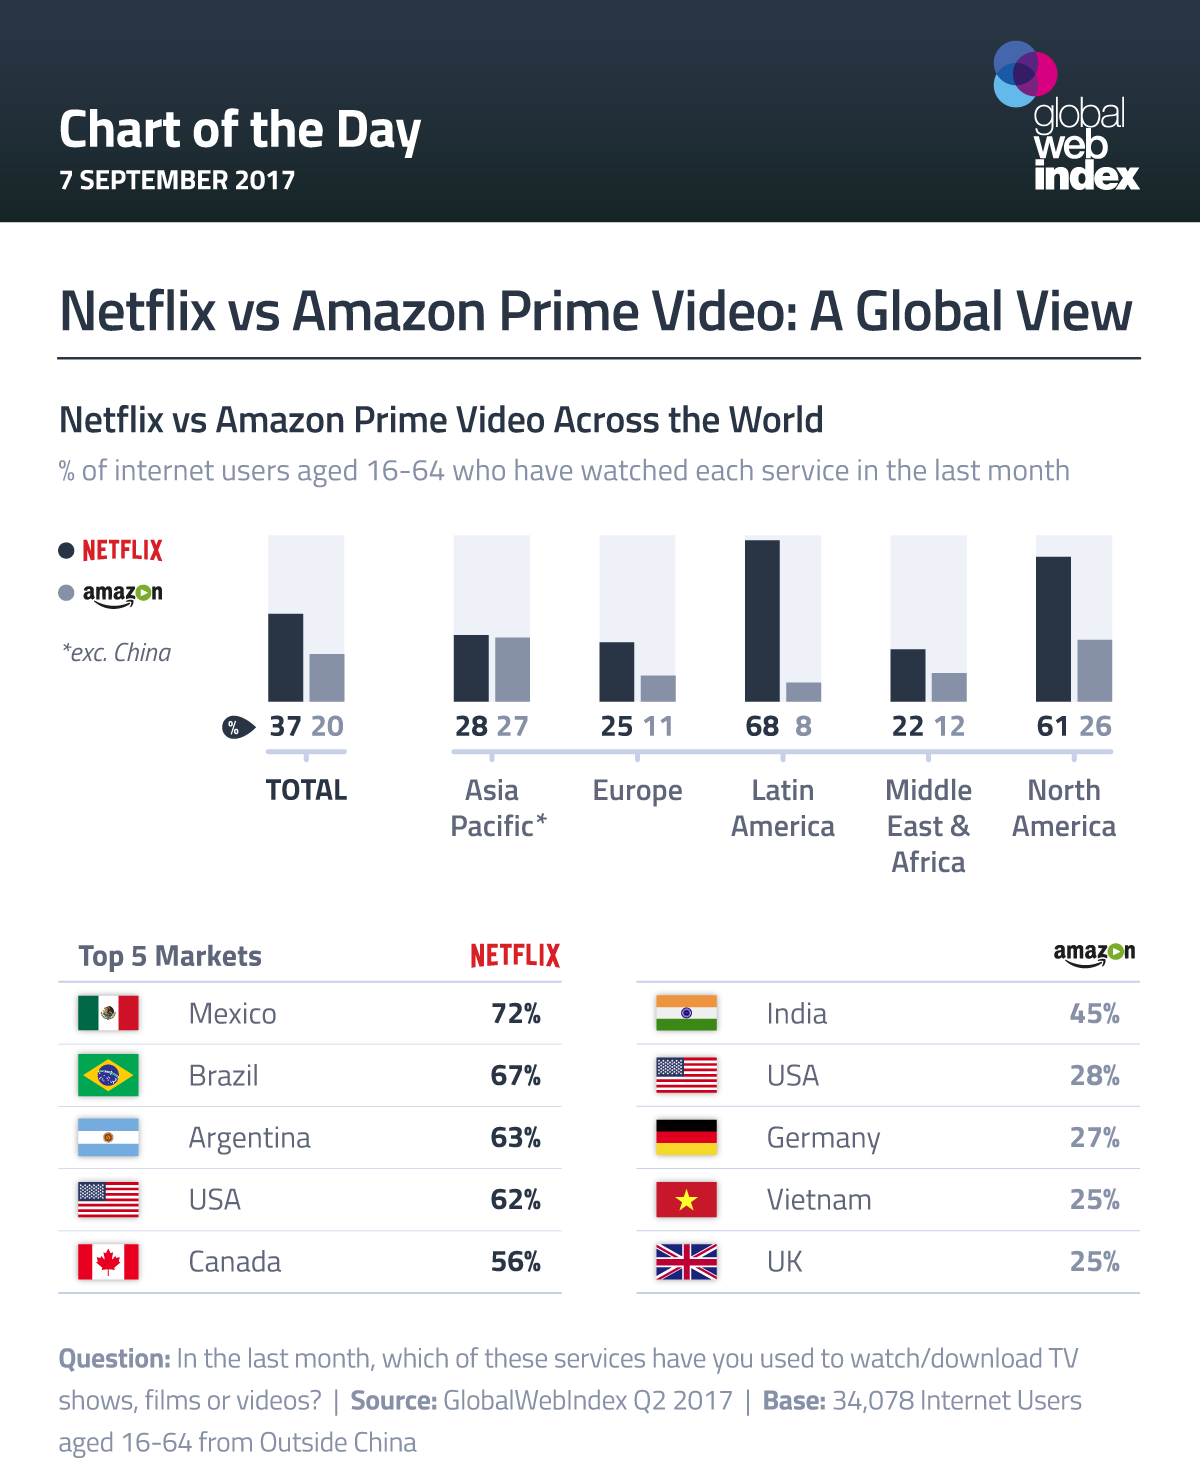 Netflix vs Amazon Prime Video: A Global View